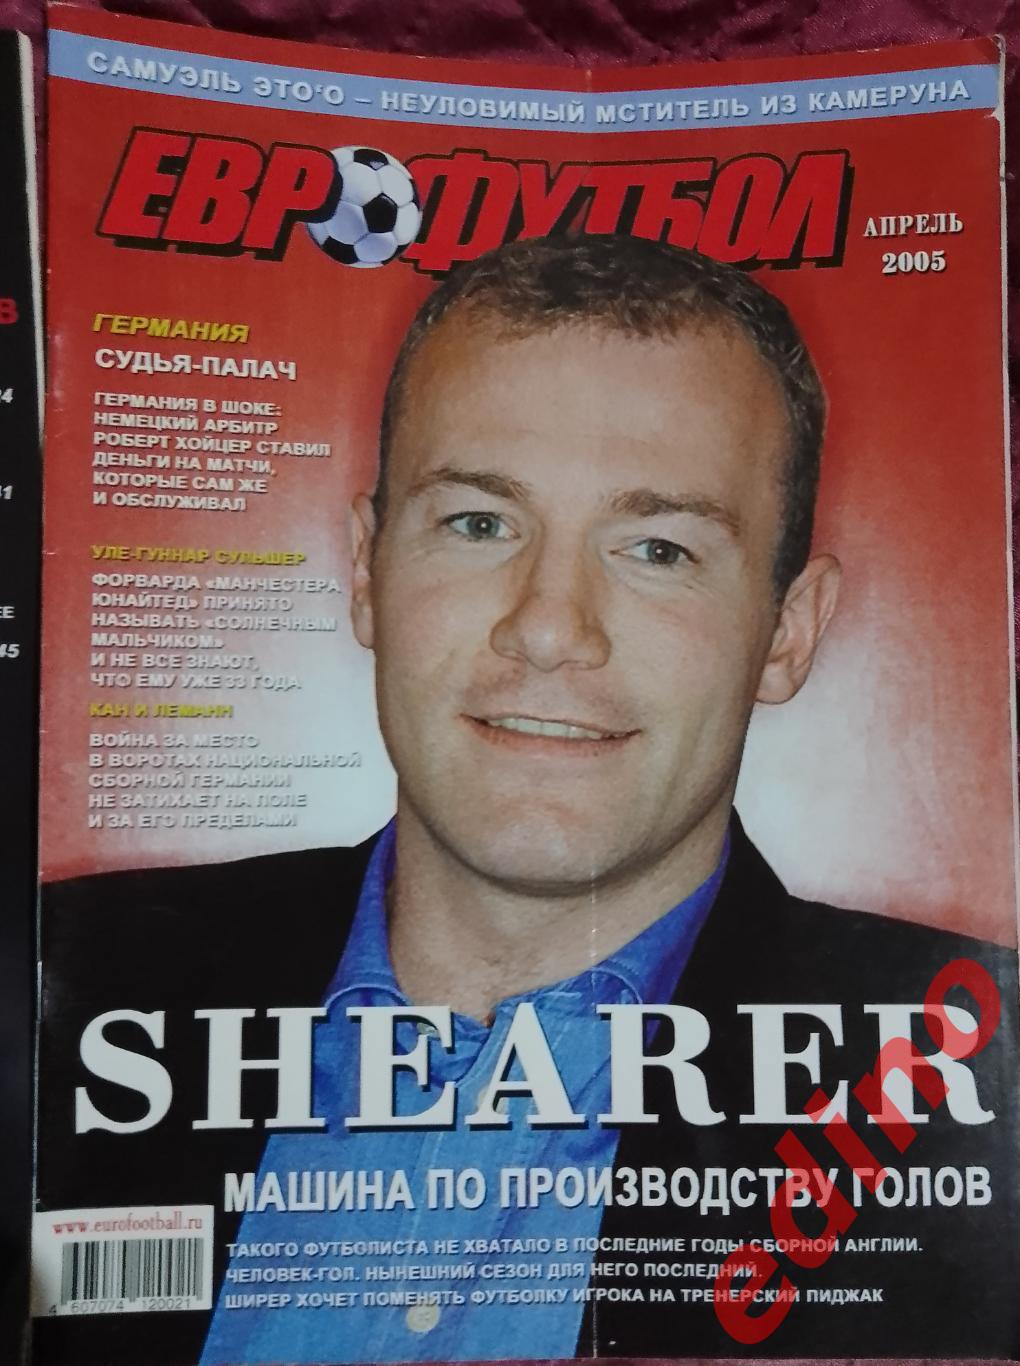 Еврофутбол. Журнал Еврофутбол 2005. Газета Еврофутбол. Газета Еврофутбол 2005. Газета Еврофутбол 2002.